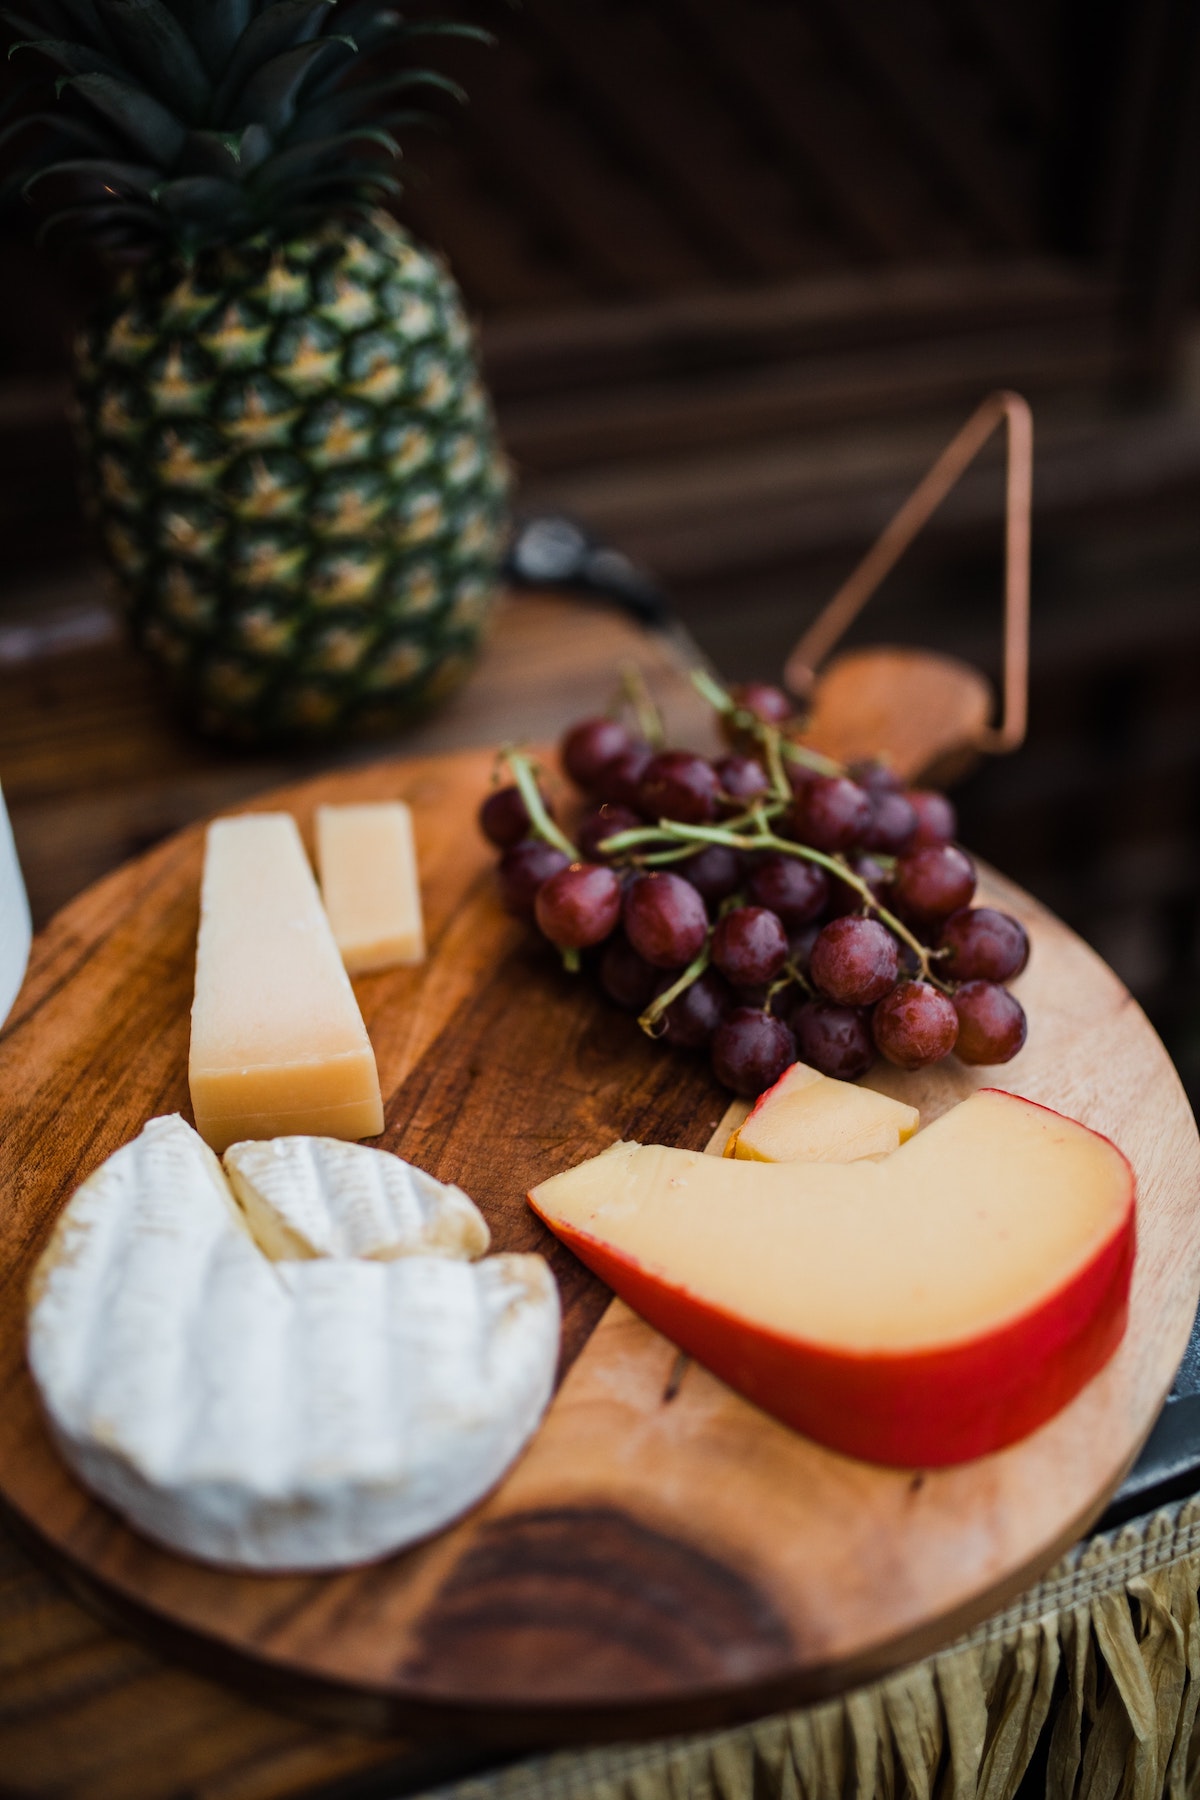 Tres tipos de queso en lonchas y un racimo de uvas rojas sobre una tabla redonda de madera con una piña visible al fondo.